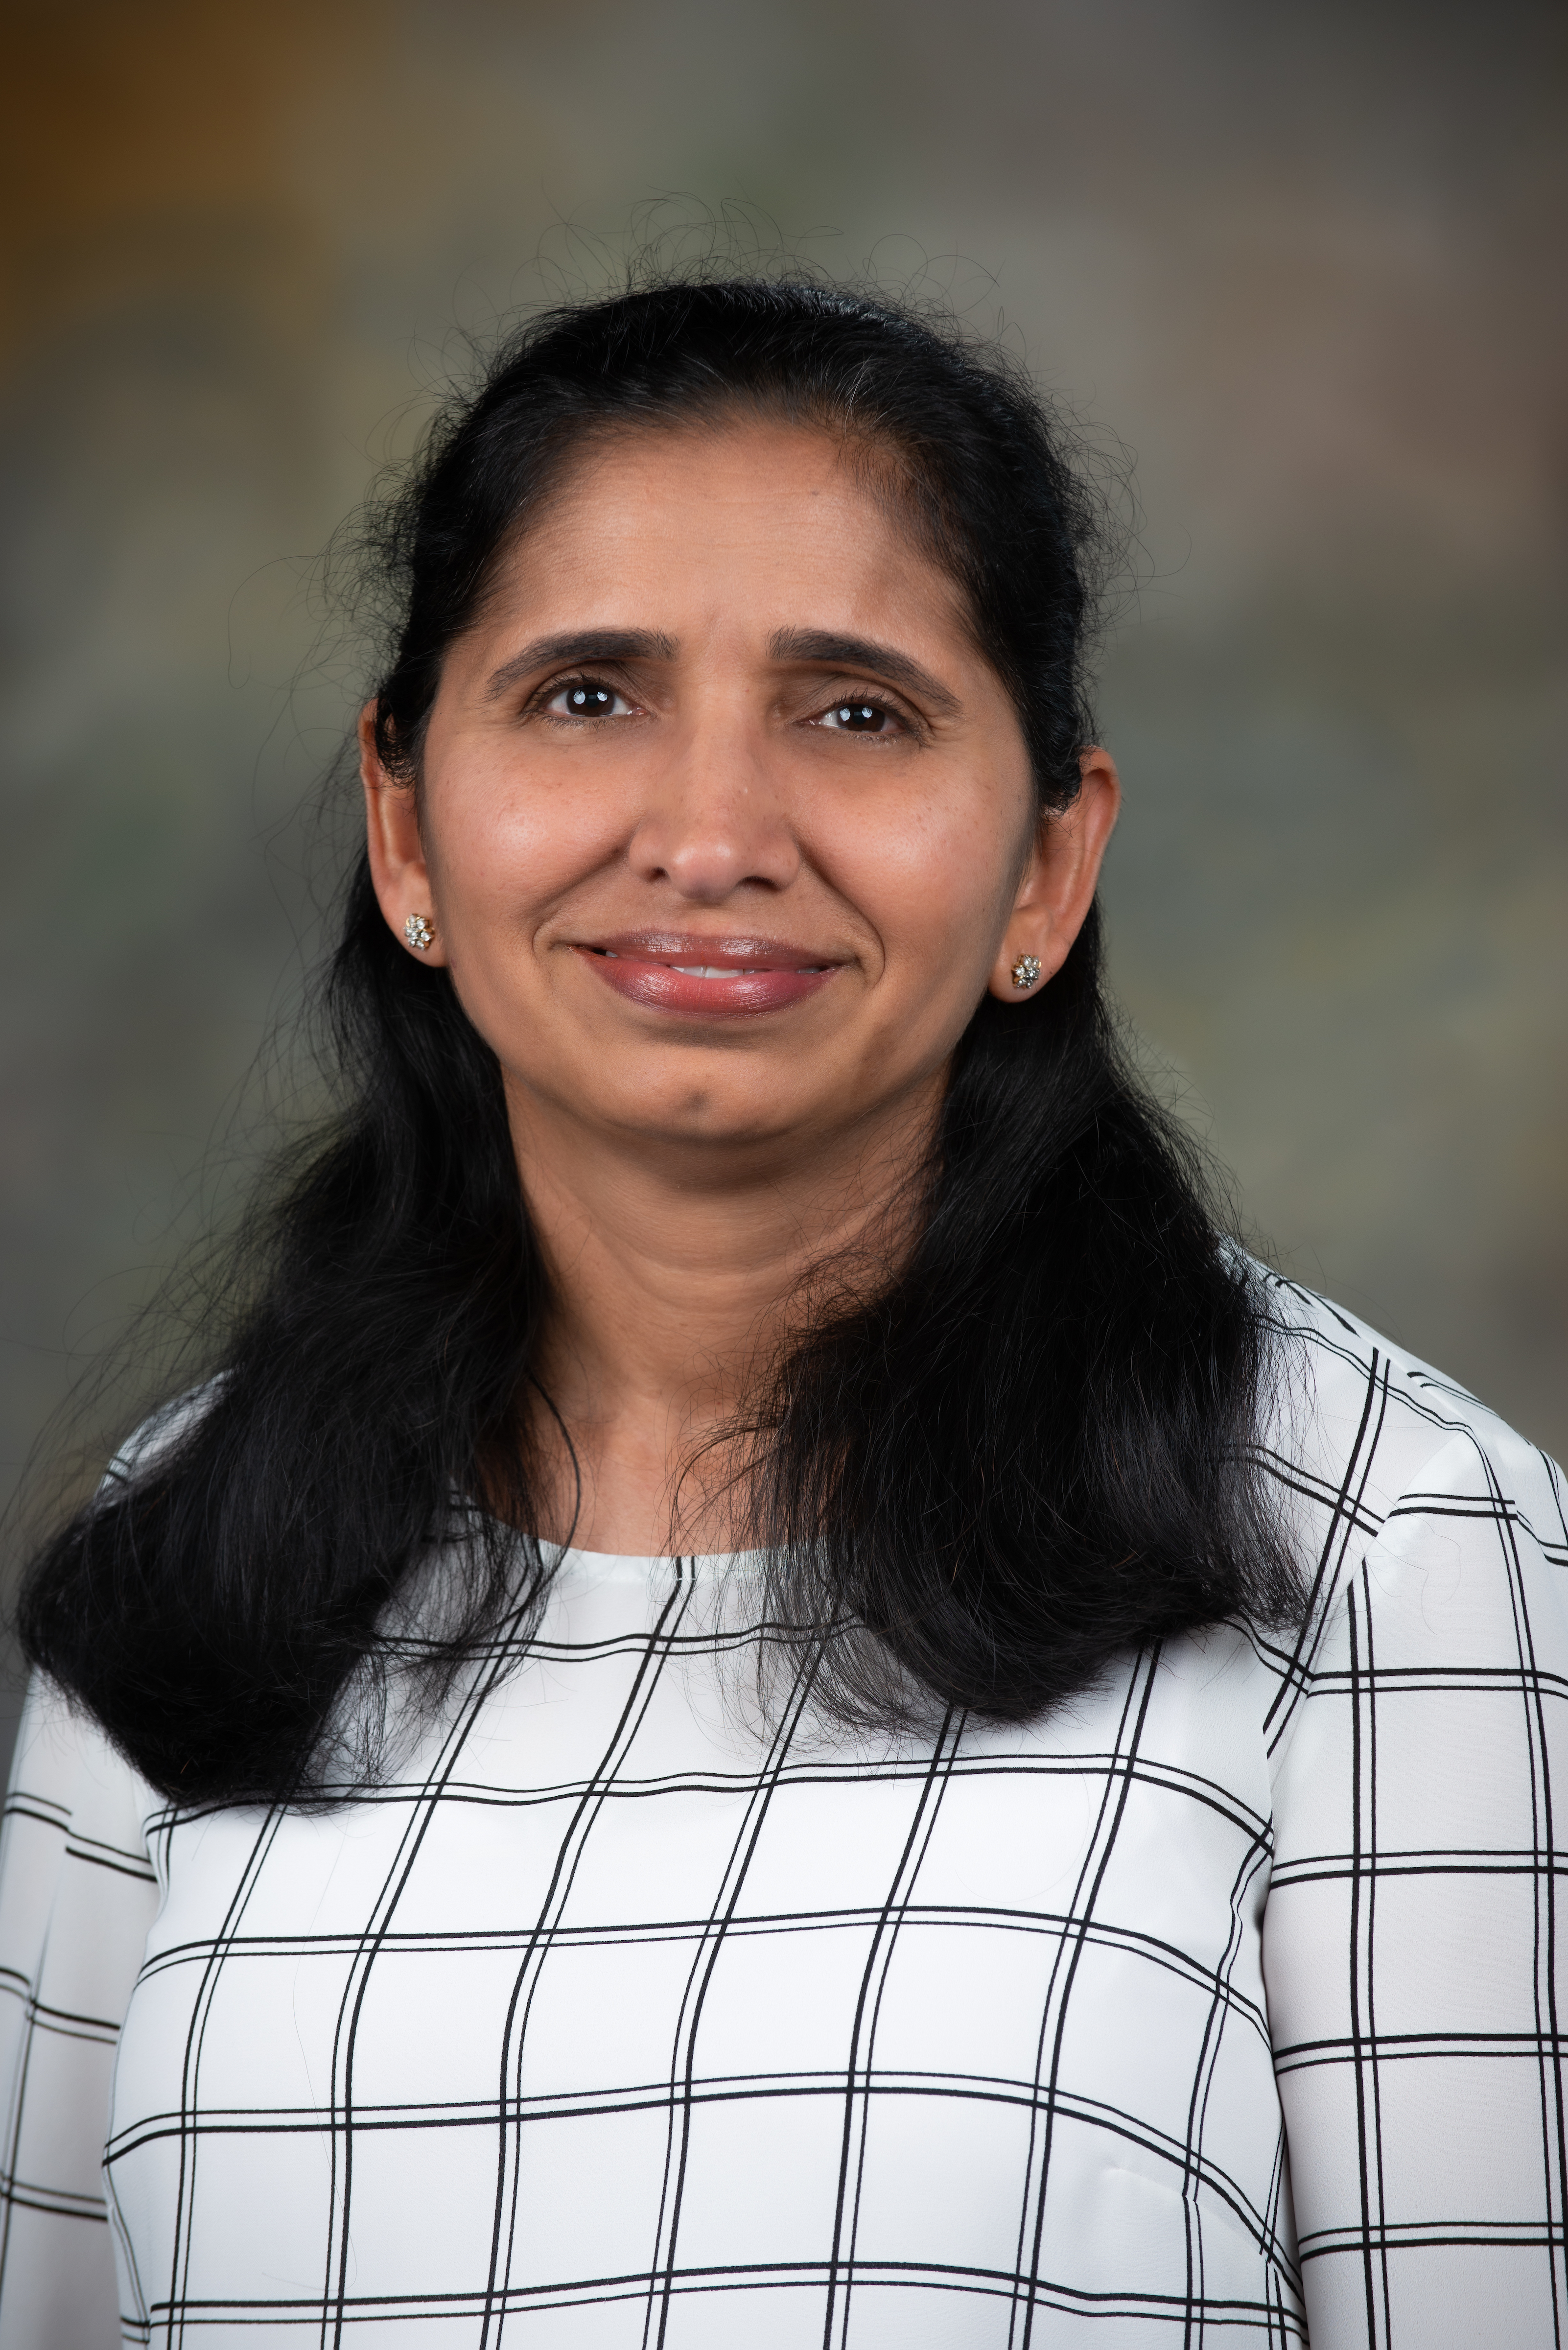  Geetha Thangiah, Ph.D.